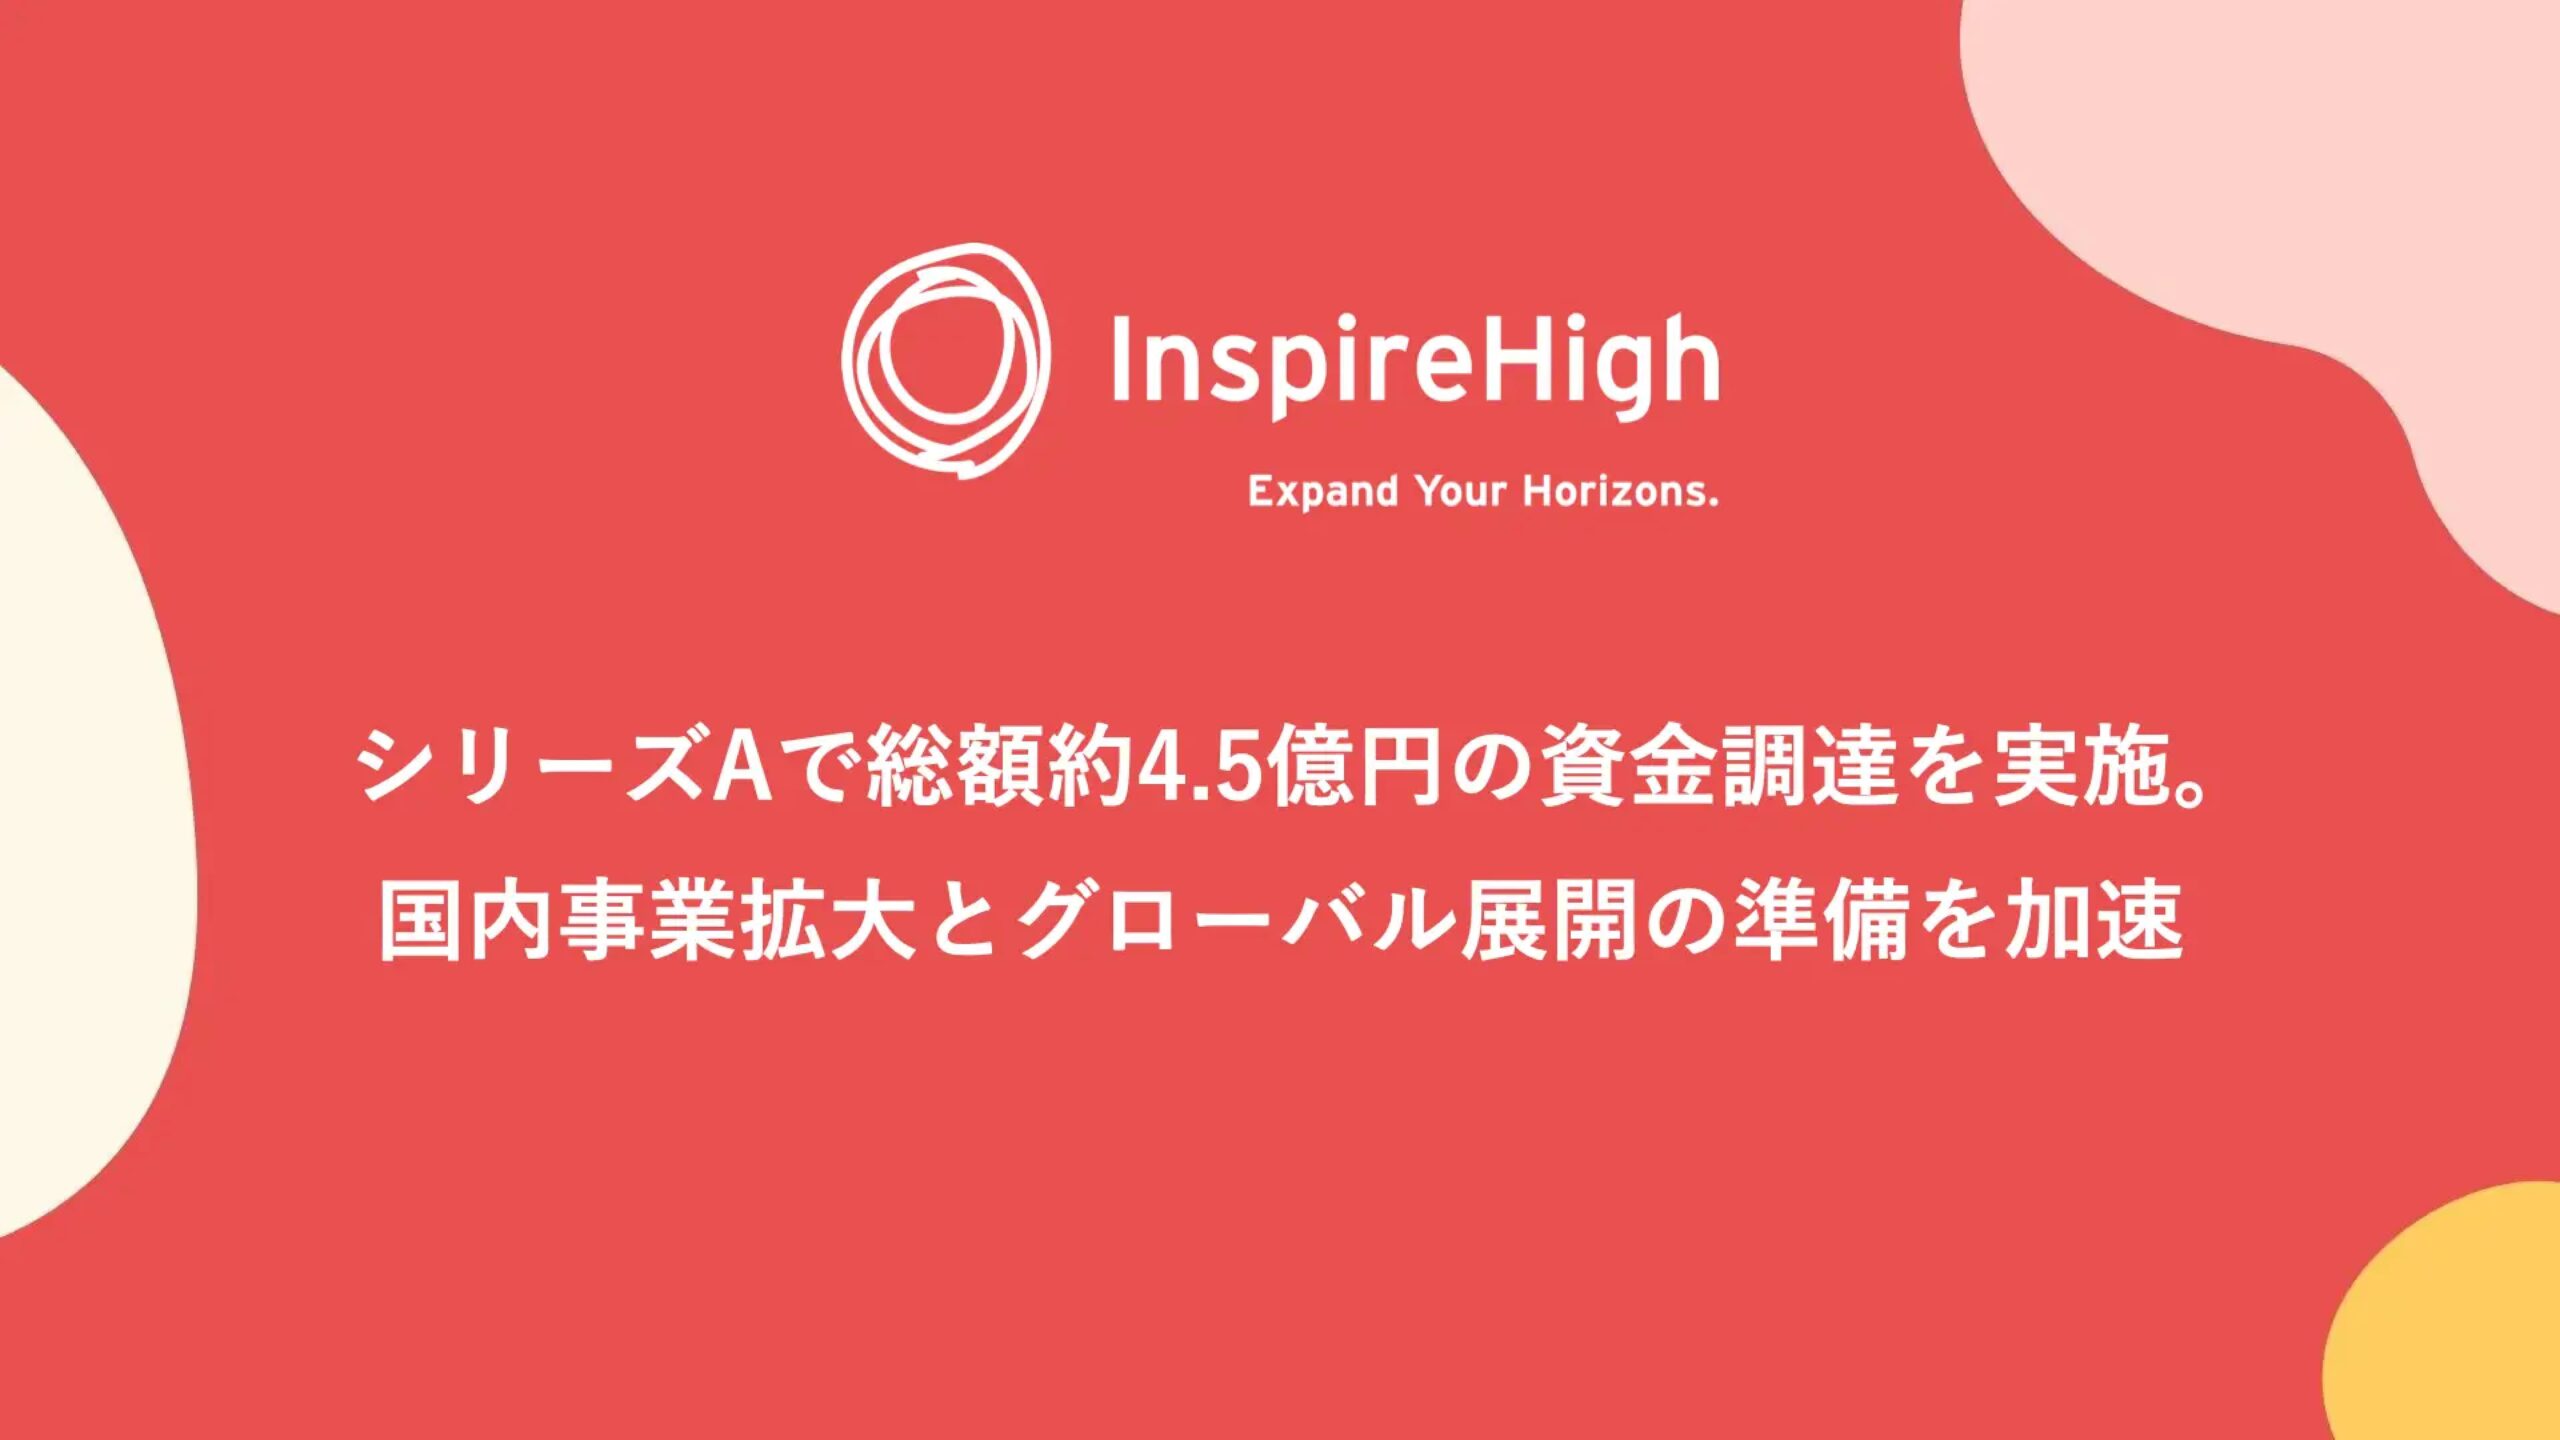 株式会社Inspire High、シリーズAで総額約4.5億円の資金調達を実施